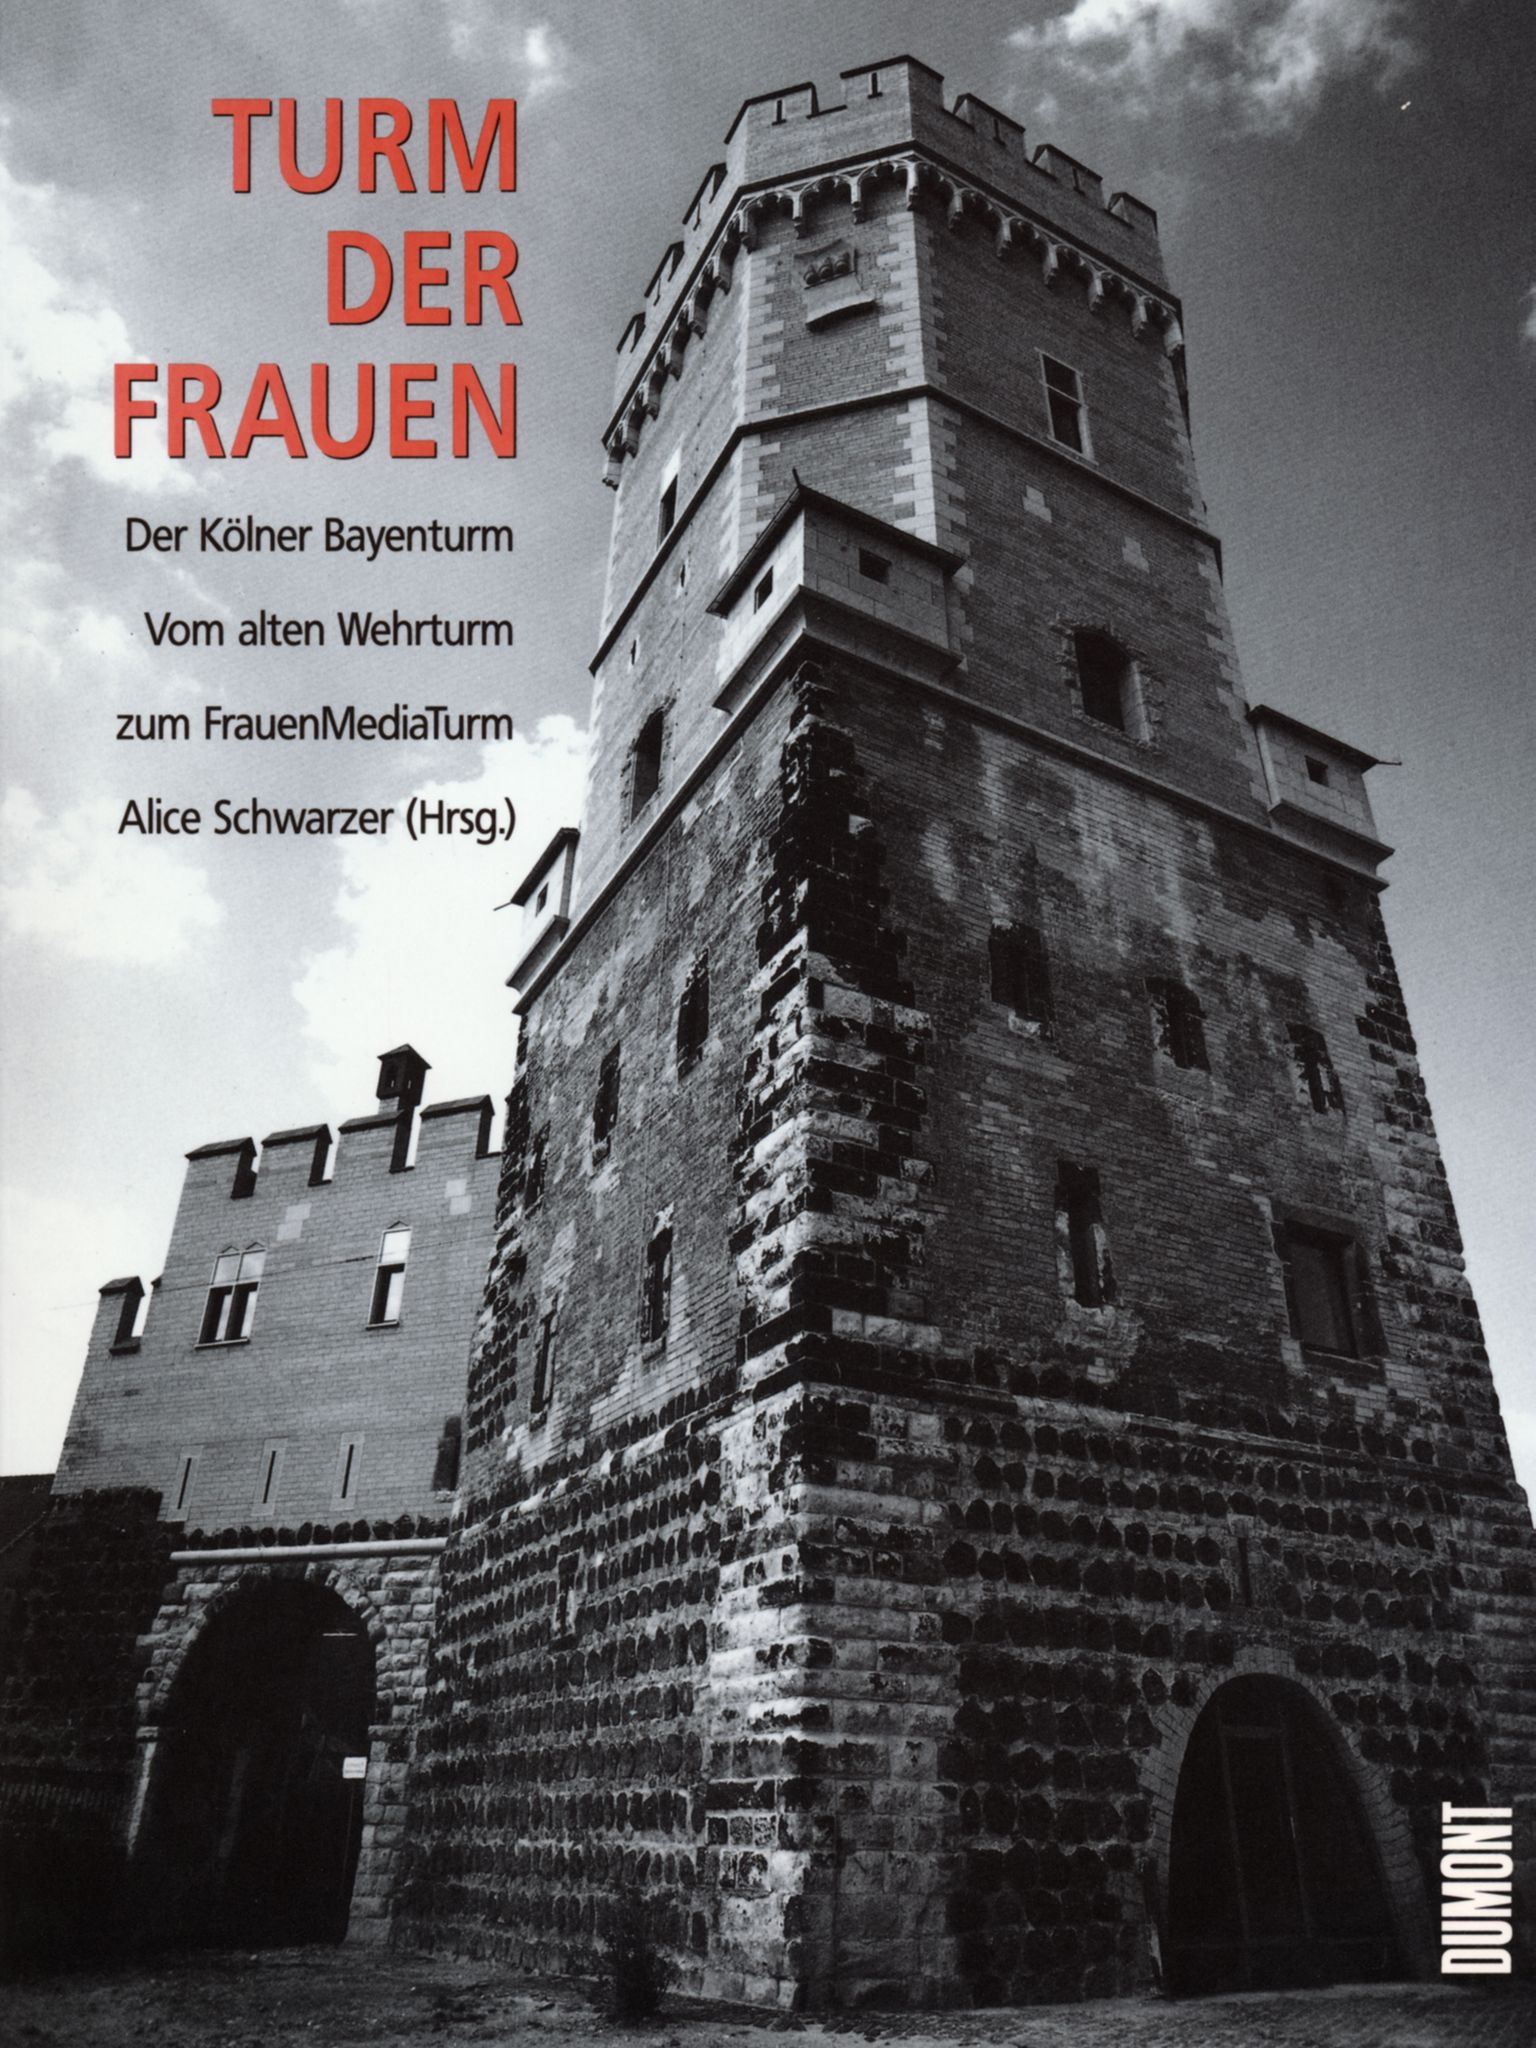 Schwarzer, Alice (Hrsg.): Turm der Frauen - Der Kölner Bayenturm. Vom alten Wehrturm zum FrauenMediaTurm. Köln: DuMont, 1994.